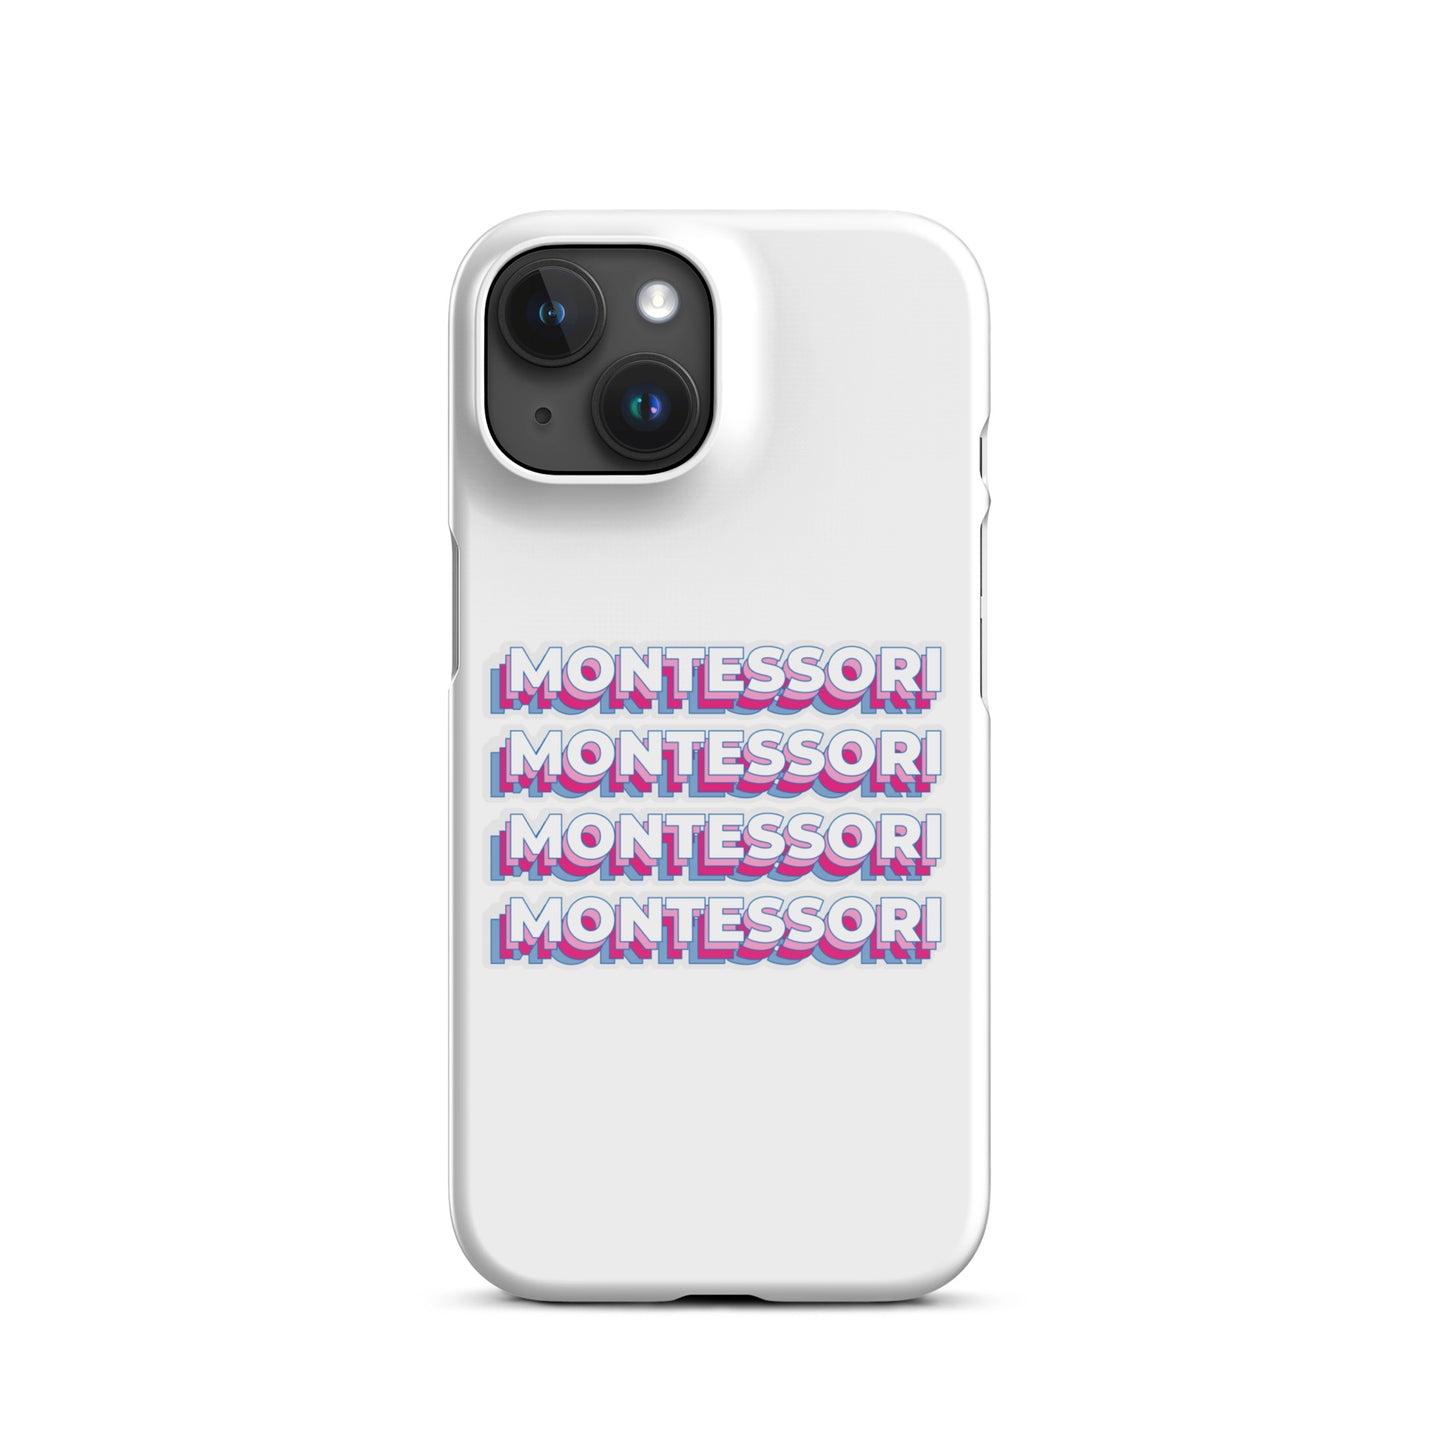 Montessori Snap case for iPhone®